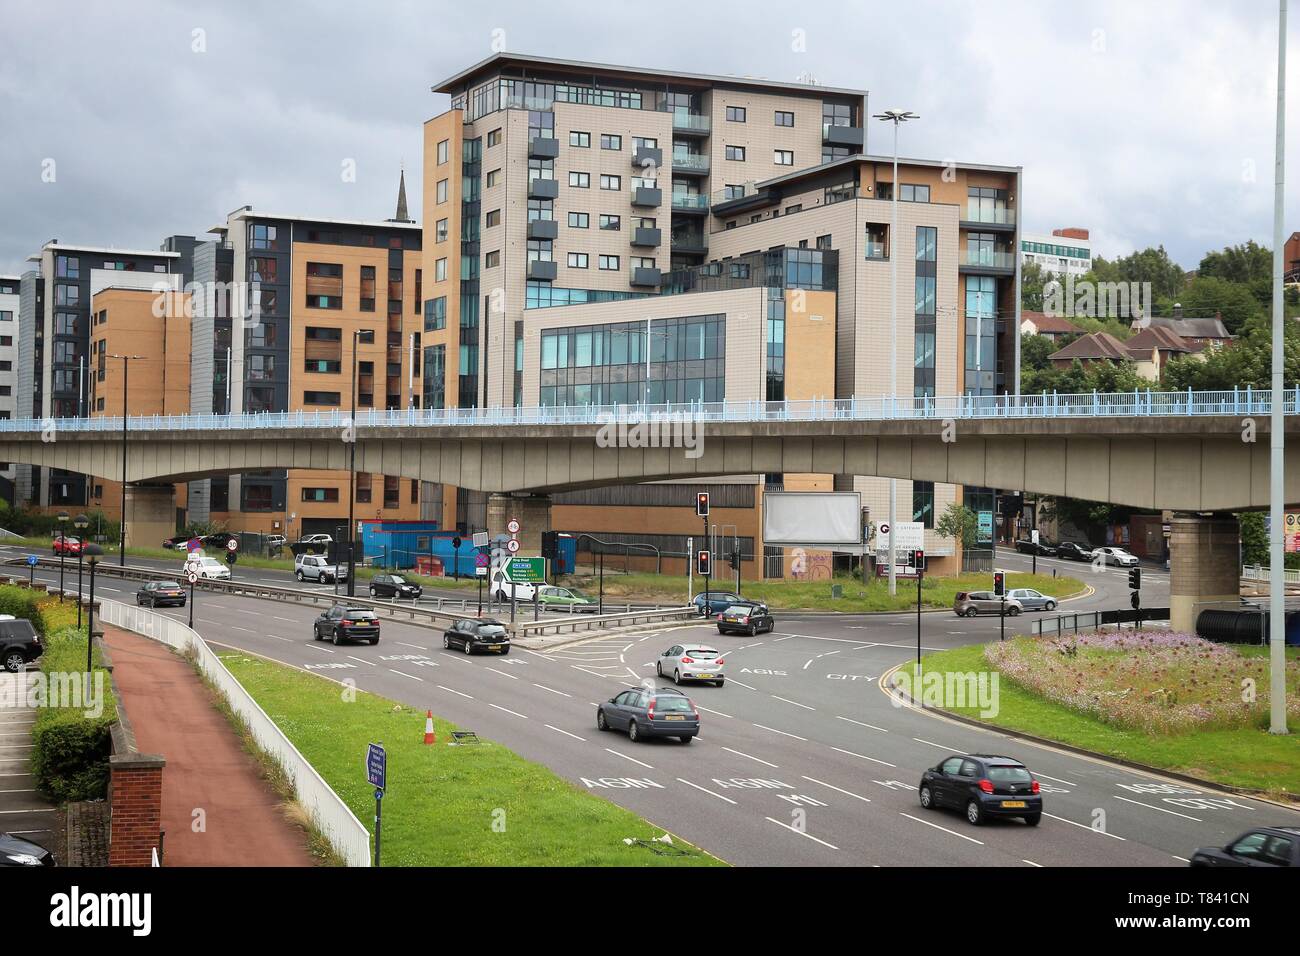 SHEFFIELD, Großbritannien - 10 JULI 2016: Leute fahren auf einer mehrspurigen Straße in Sheffield, Großbritannien. Großbritannien hat 519 Fahrzeuge pro 1000 Einwohner. Stockfoto